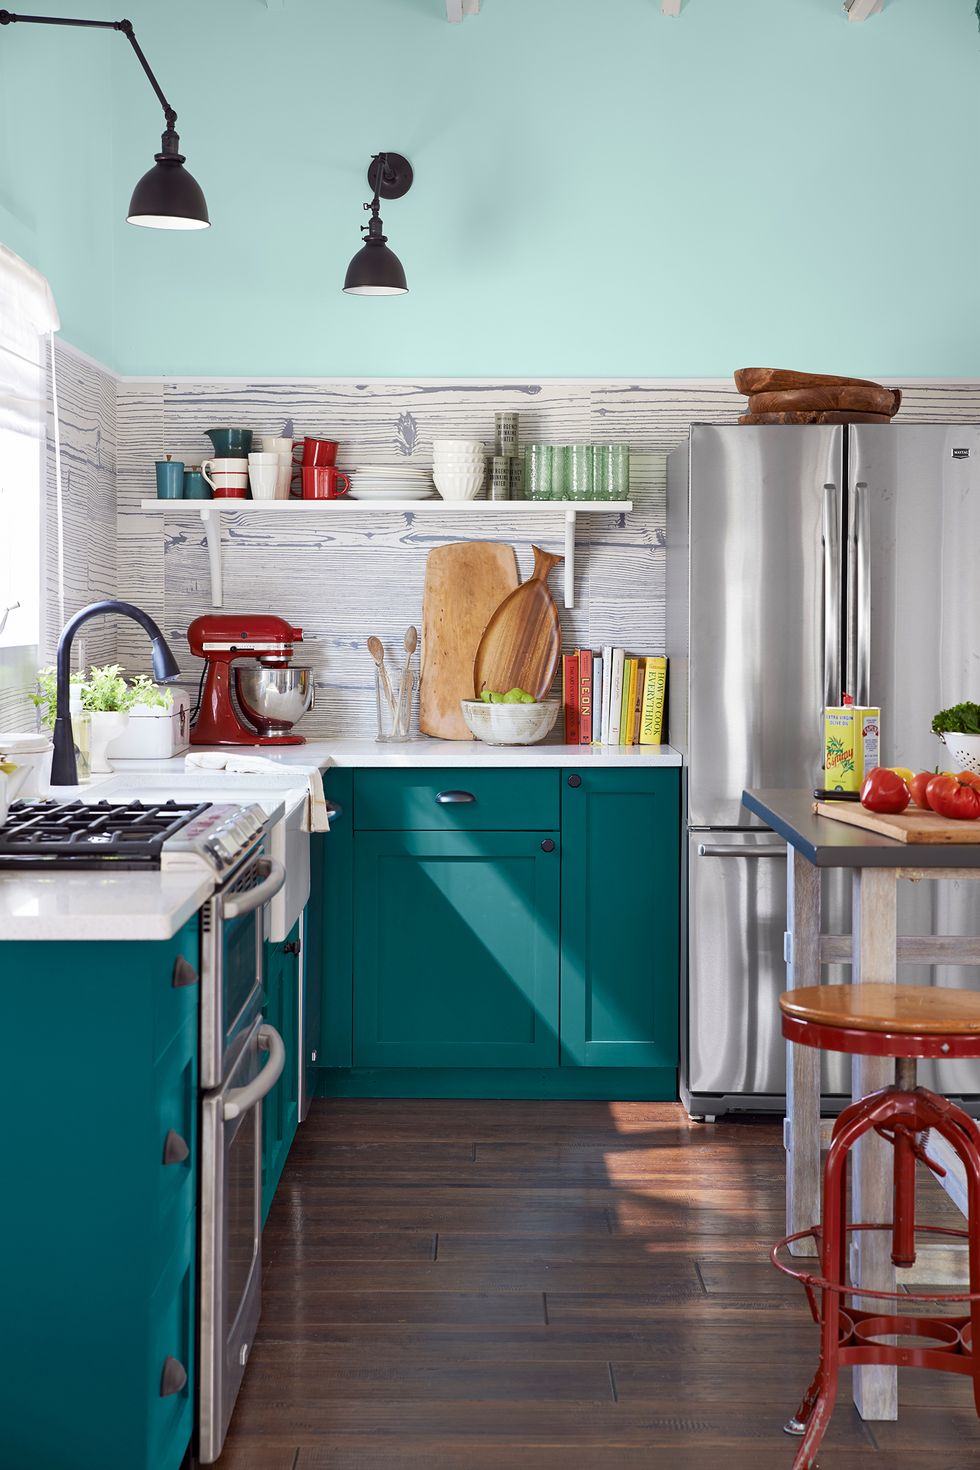 kitchen paint colors